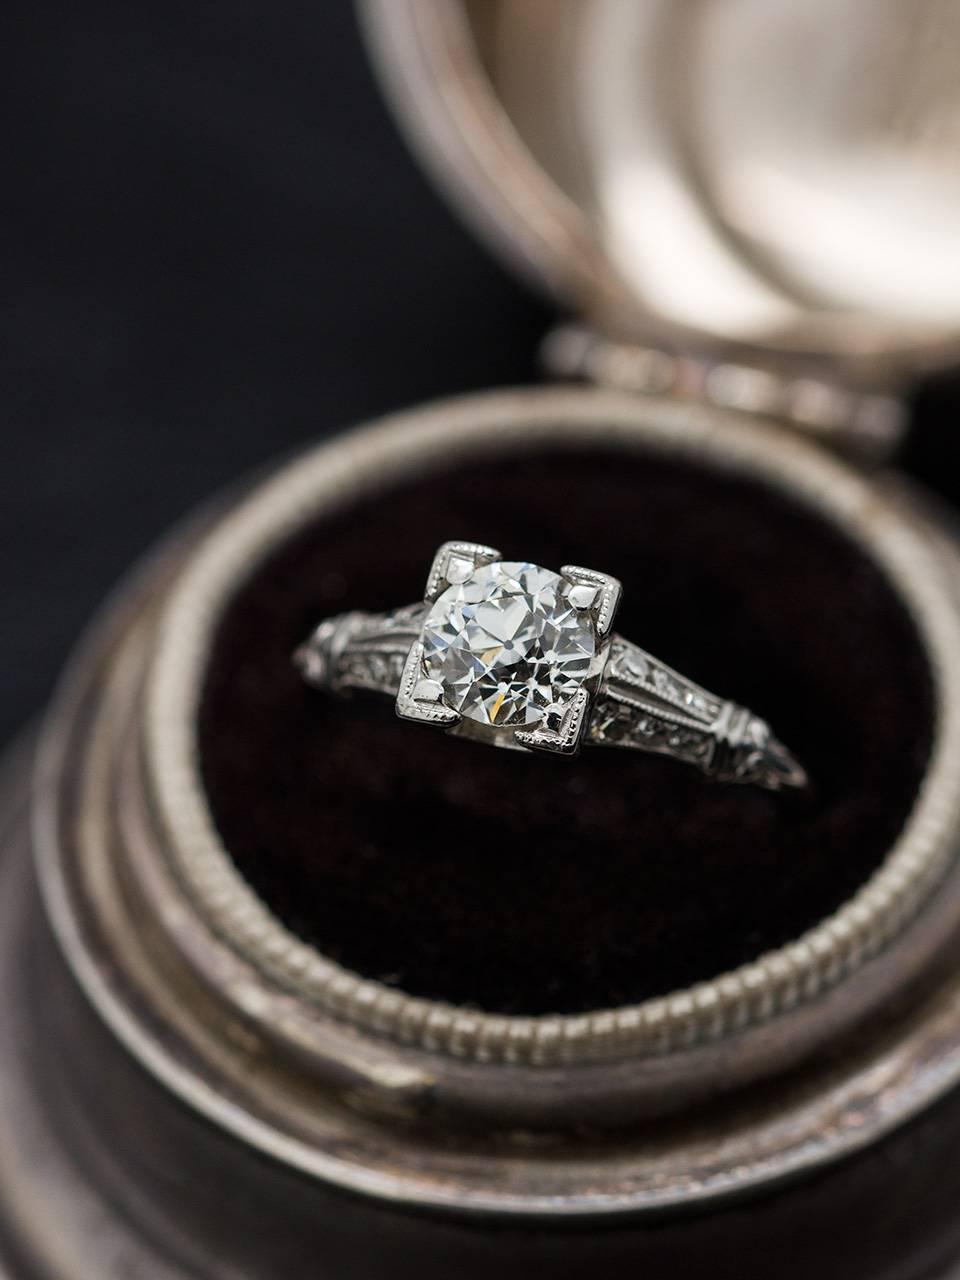 Women's Antique Engagement Ring Platinum 0.90 Carat Old European Cut Diamond circa 1930s